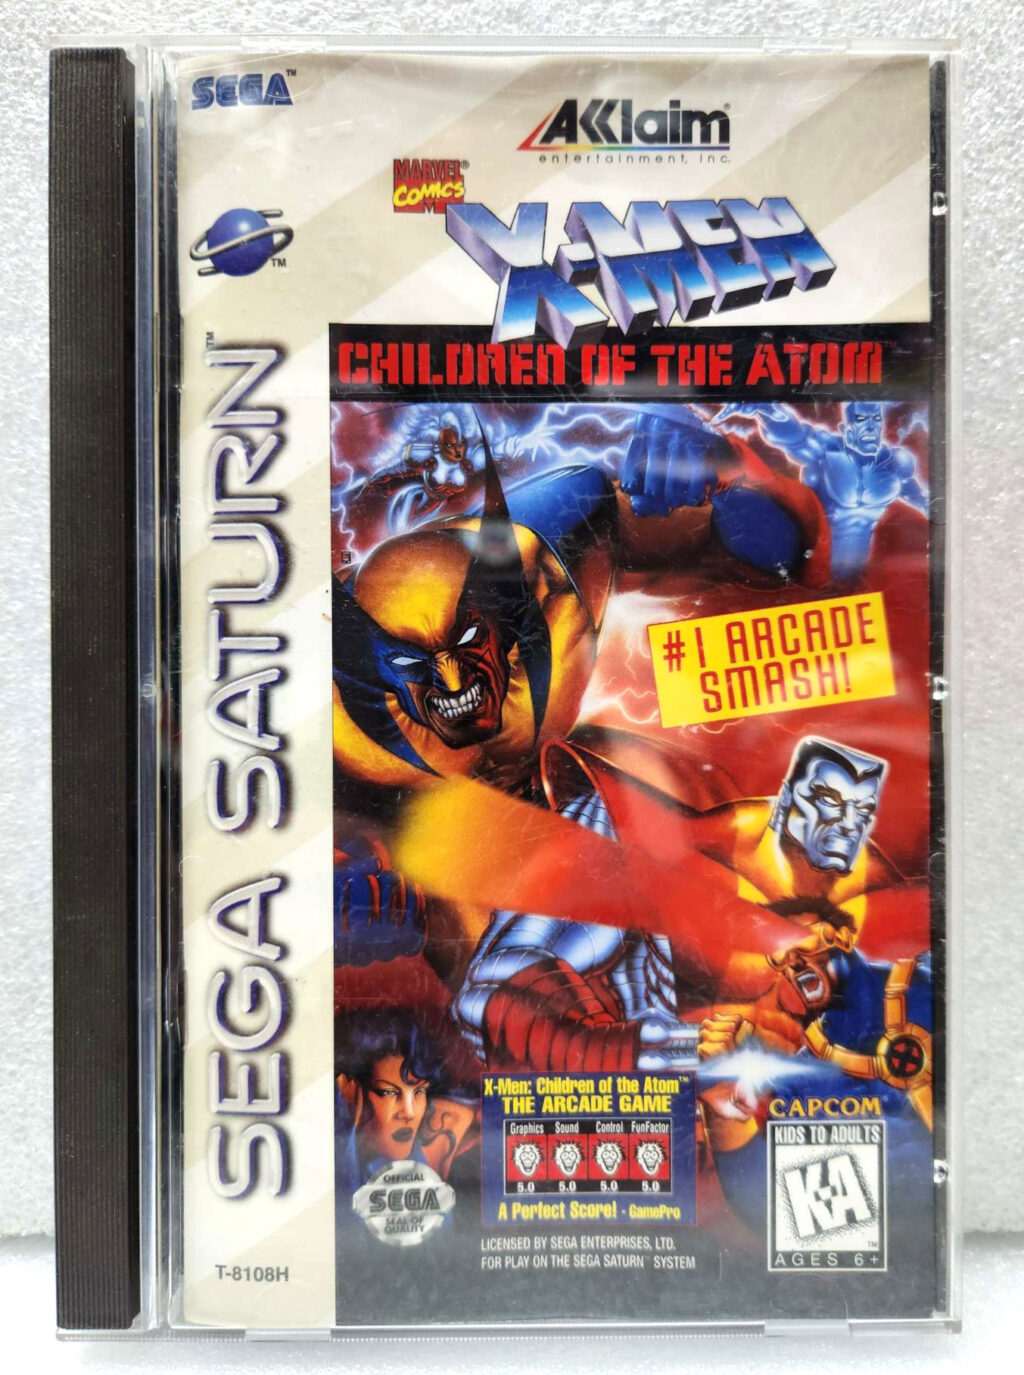 1996 Capcom Acclaim Entertainment X-men: Children of the Atom Video Game for Sega Saturn Complete in Case